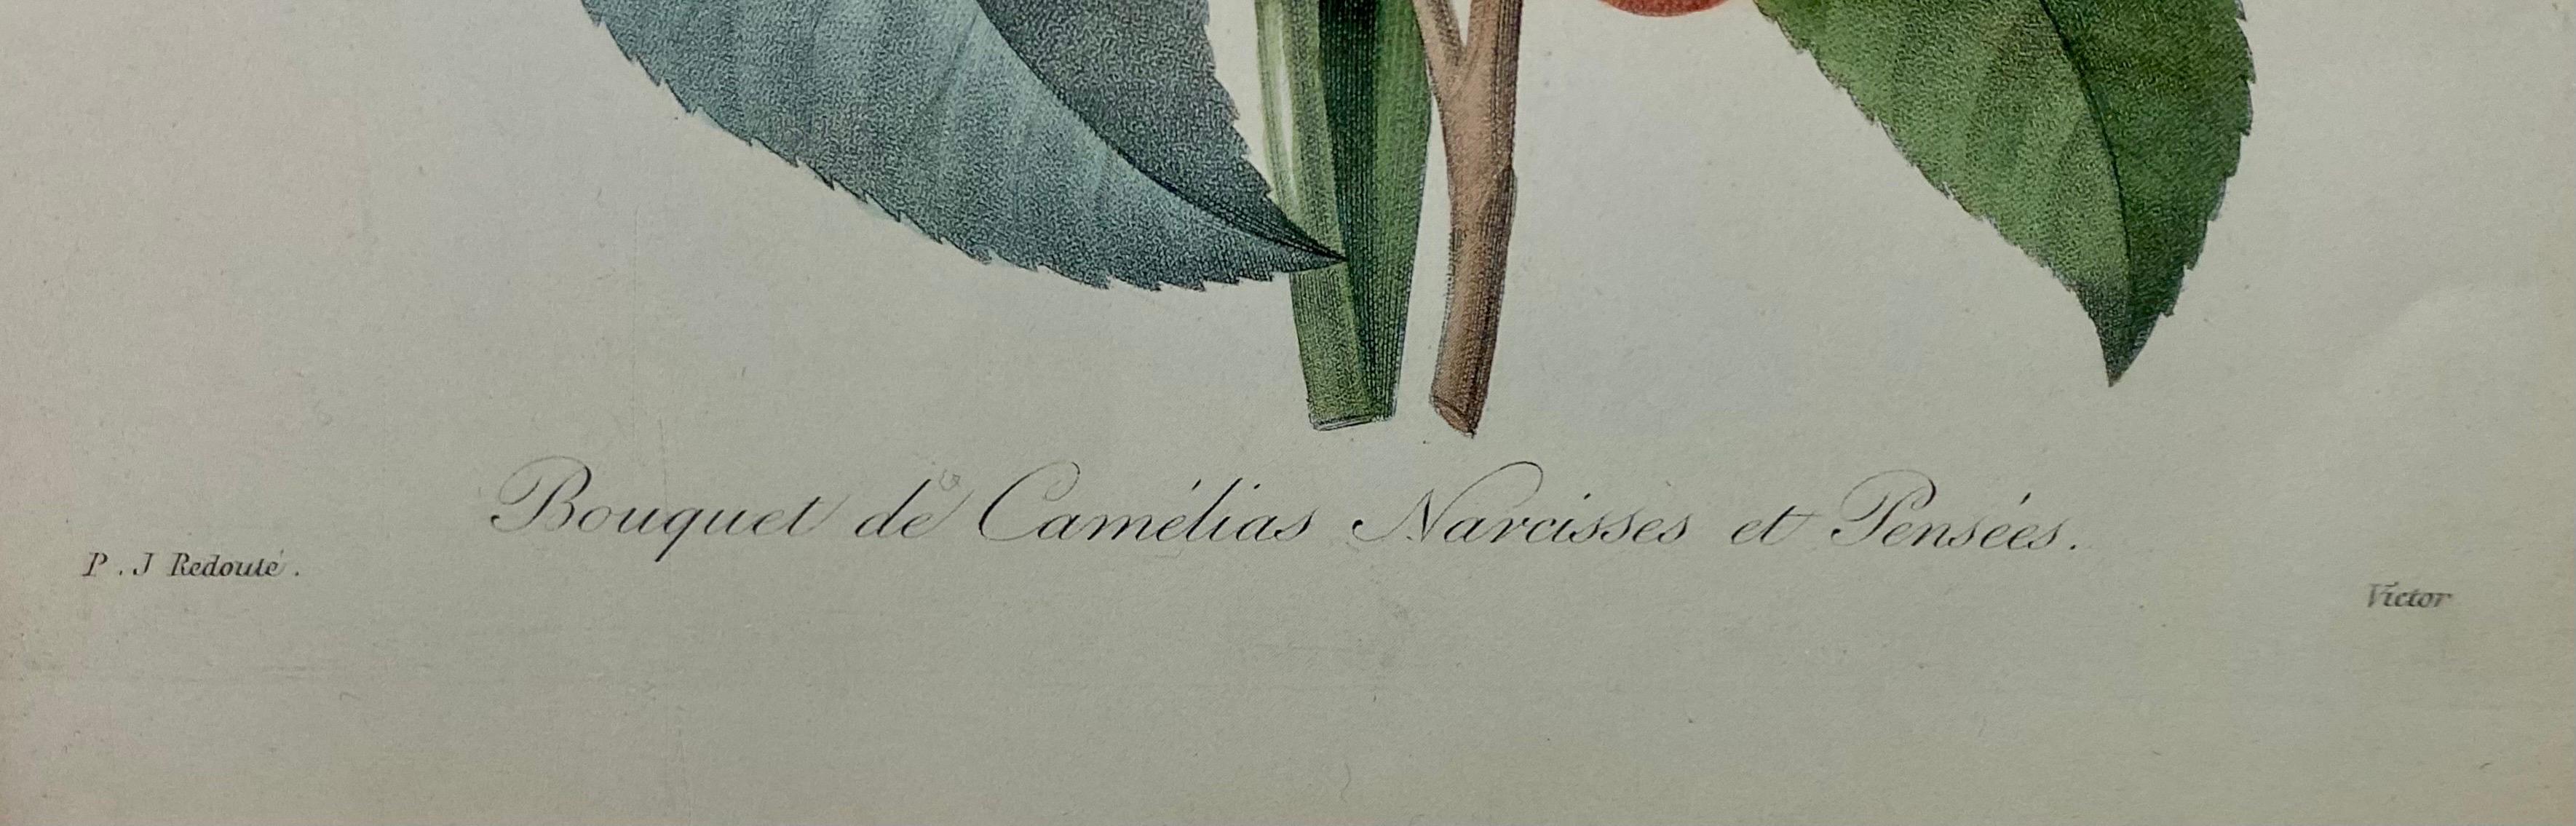 Pierre-Joseph Redoute Anemone Simple & Bouquet De Camelias, Narcisses Et Pensees - Beige Still-Life Print by Pierre-Joseph Redouté